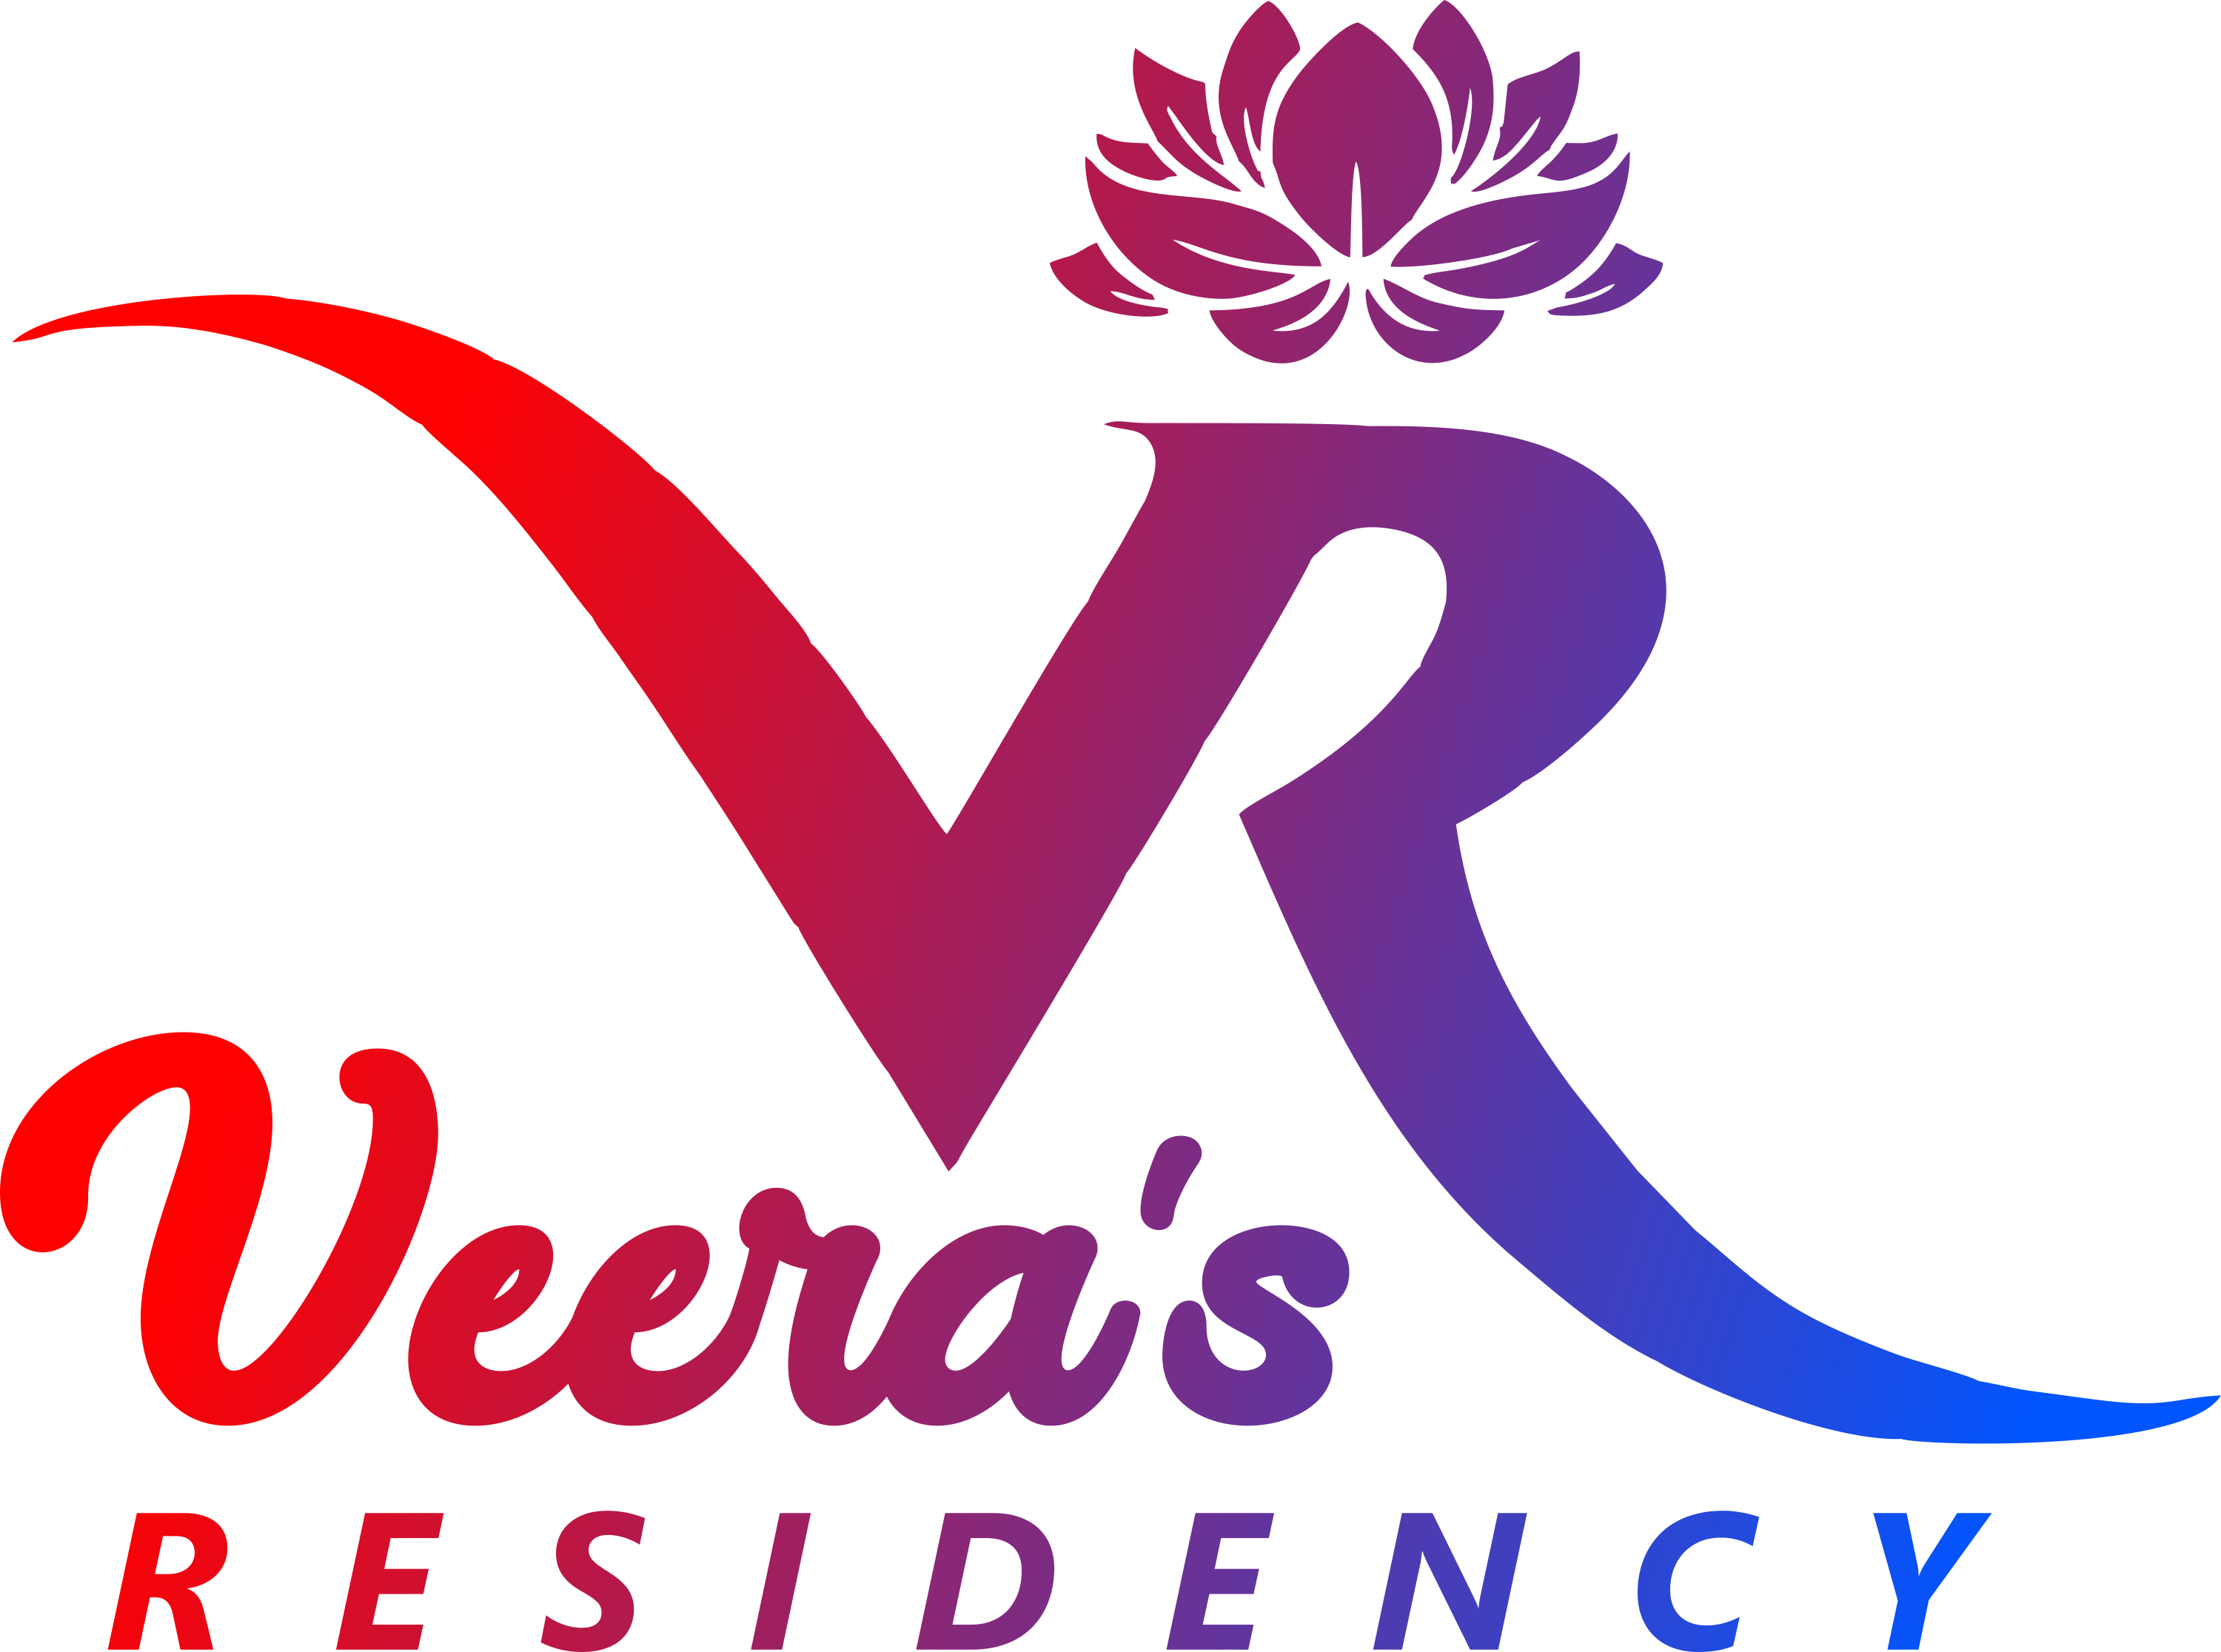 Veeras Residency